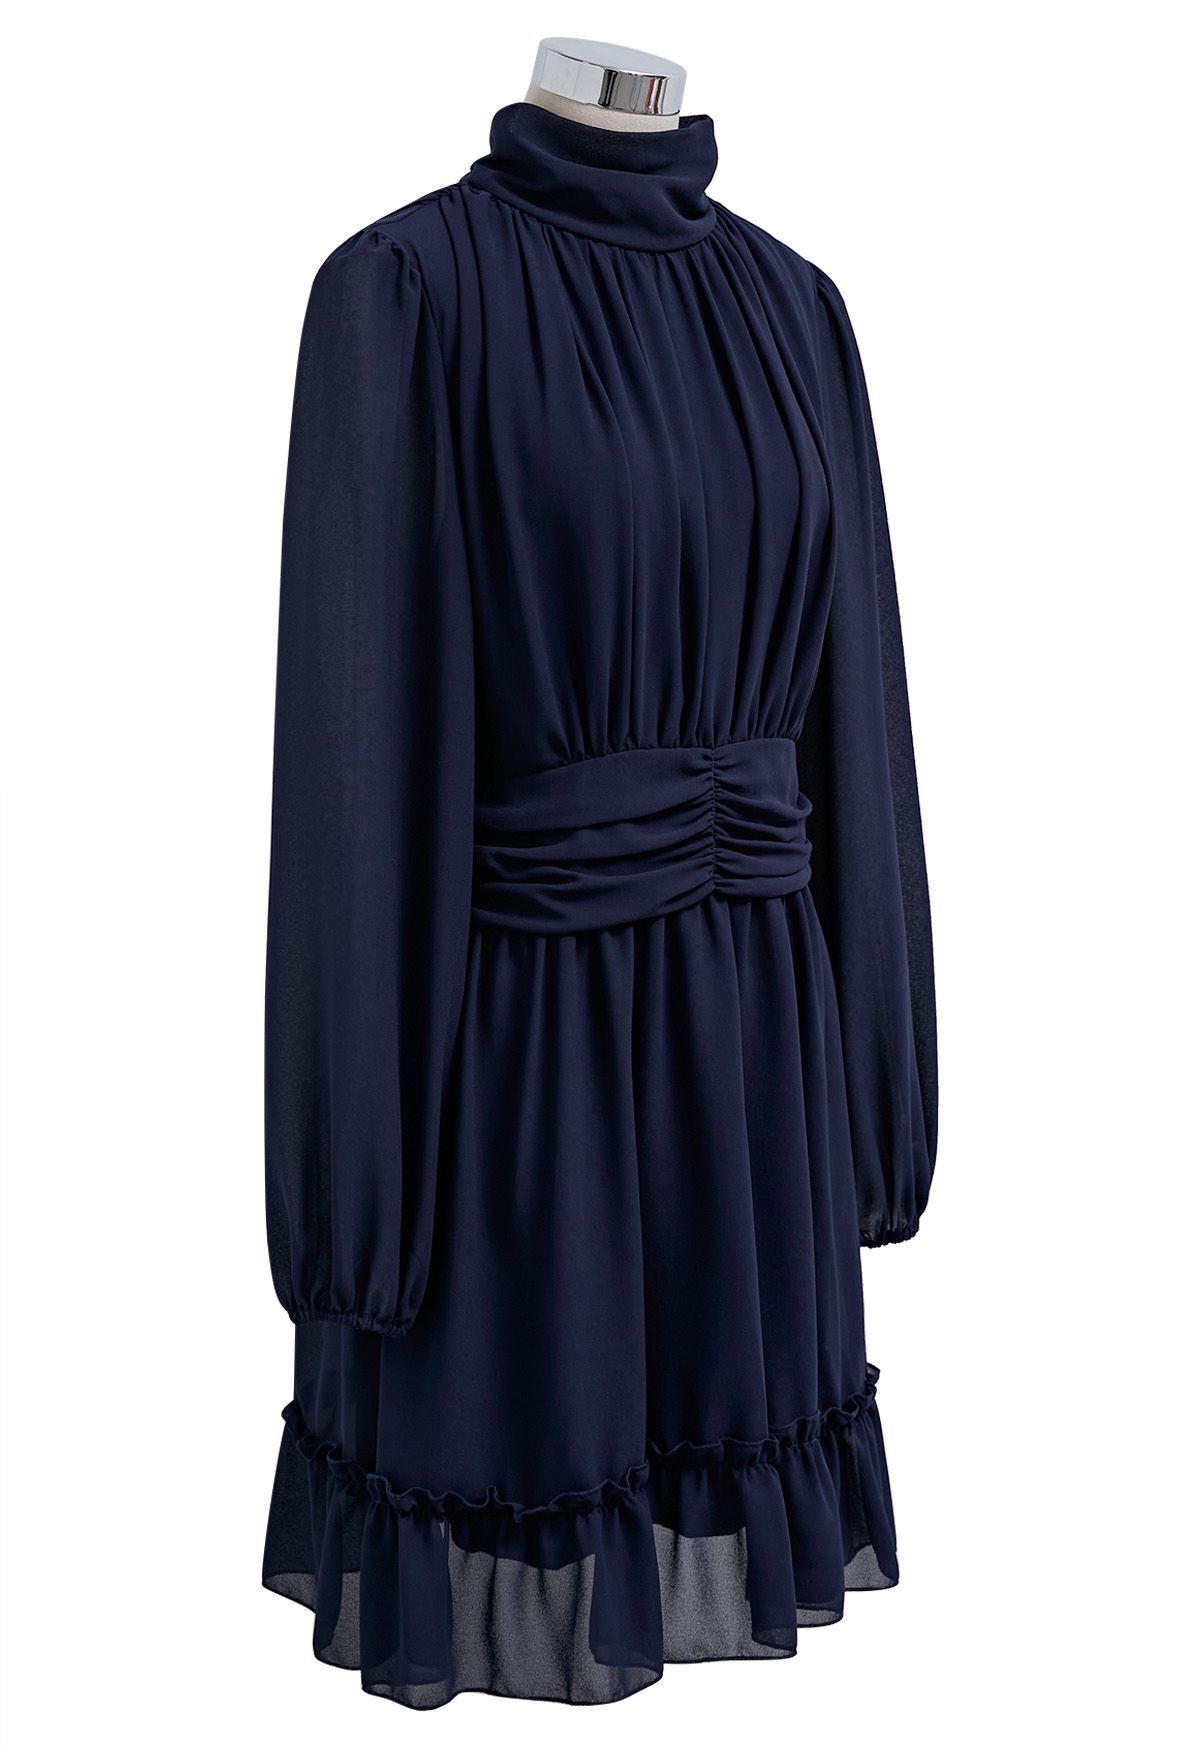 فستان من الشيفون ذو رقبة وهمية وخصر مكشكش باللون الأزرق الداكن